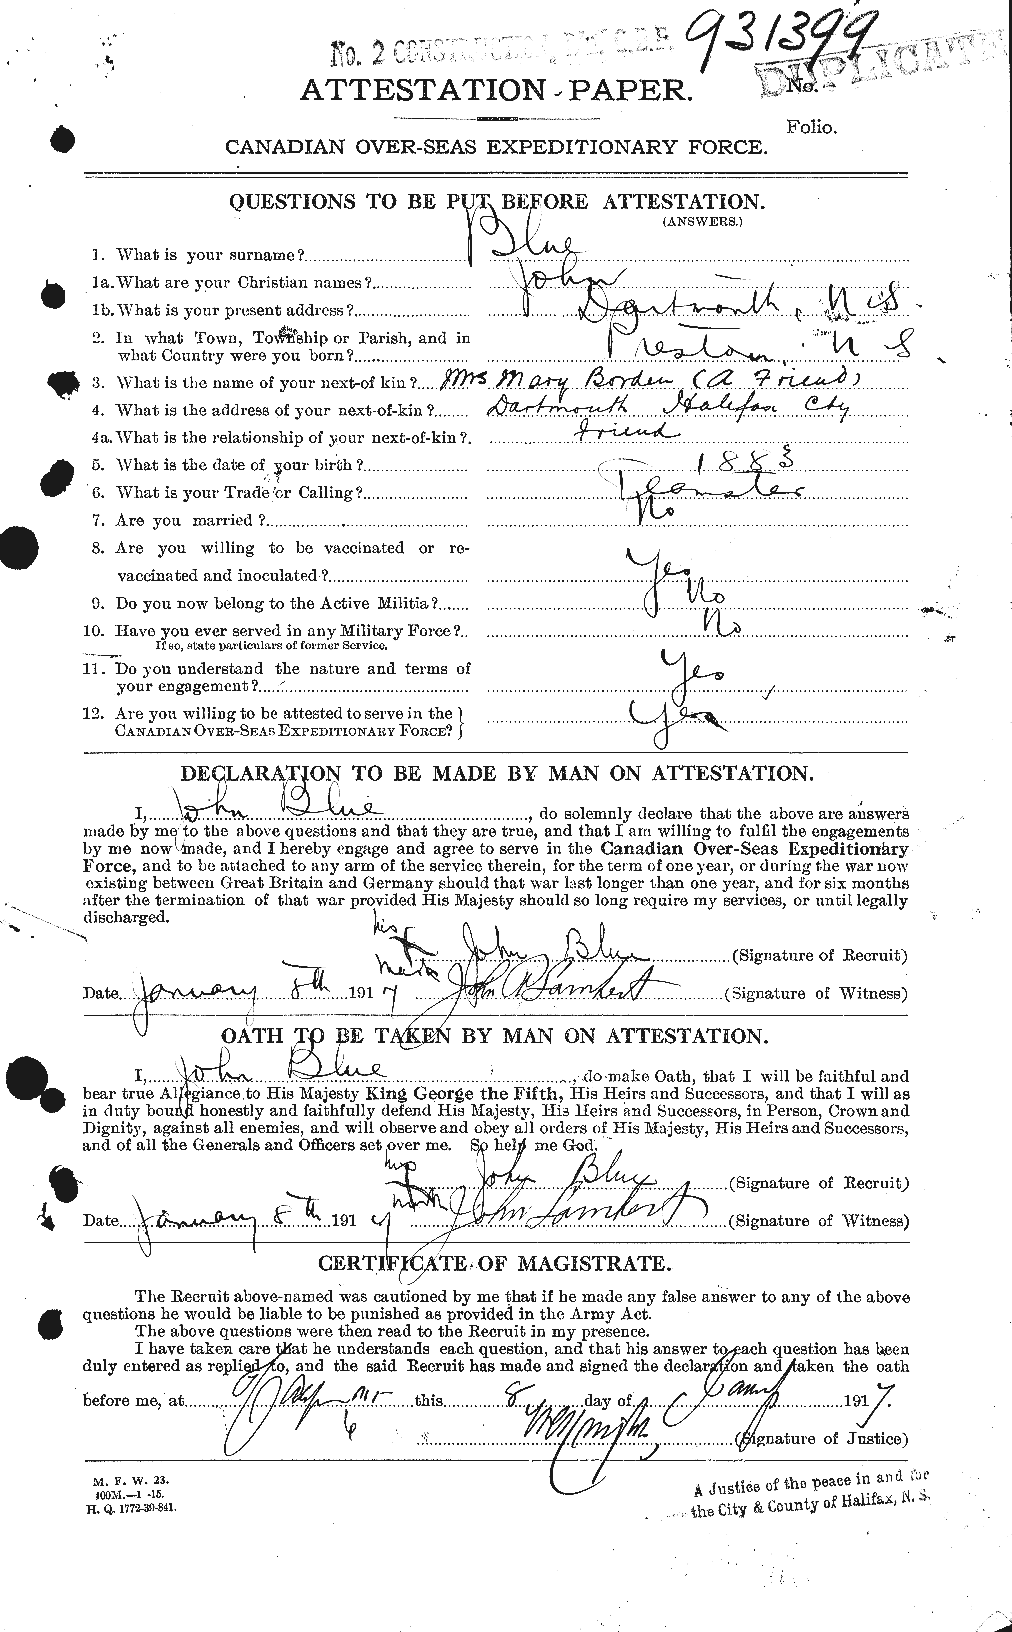 Dossiers du Personnel de la Première Guerre mondiale - CEC 247141a